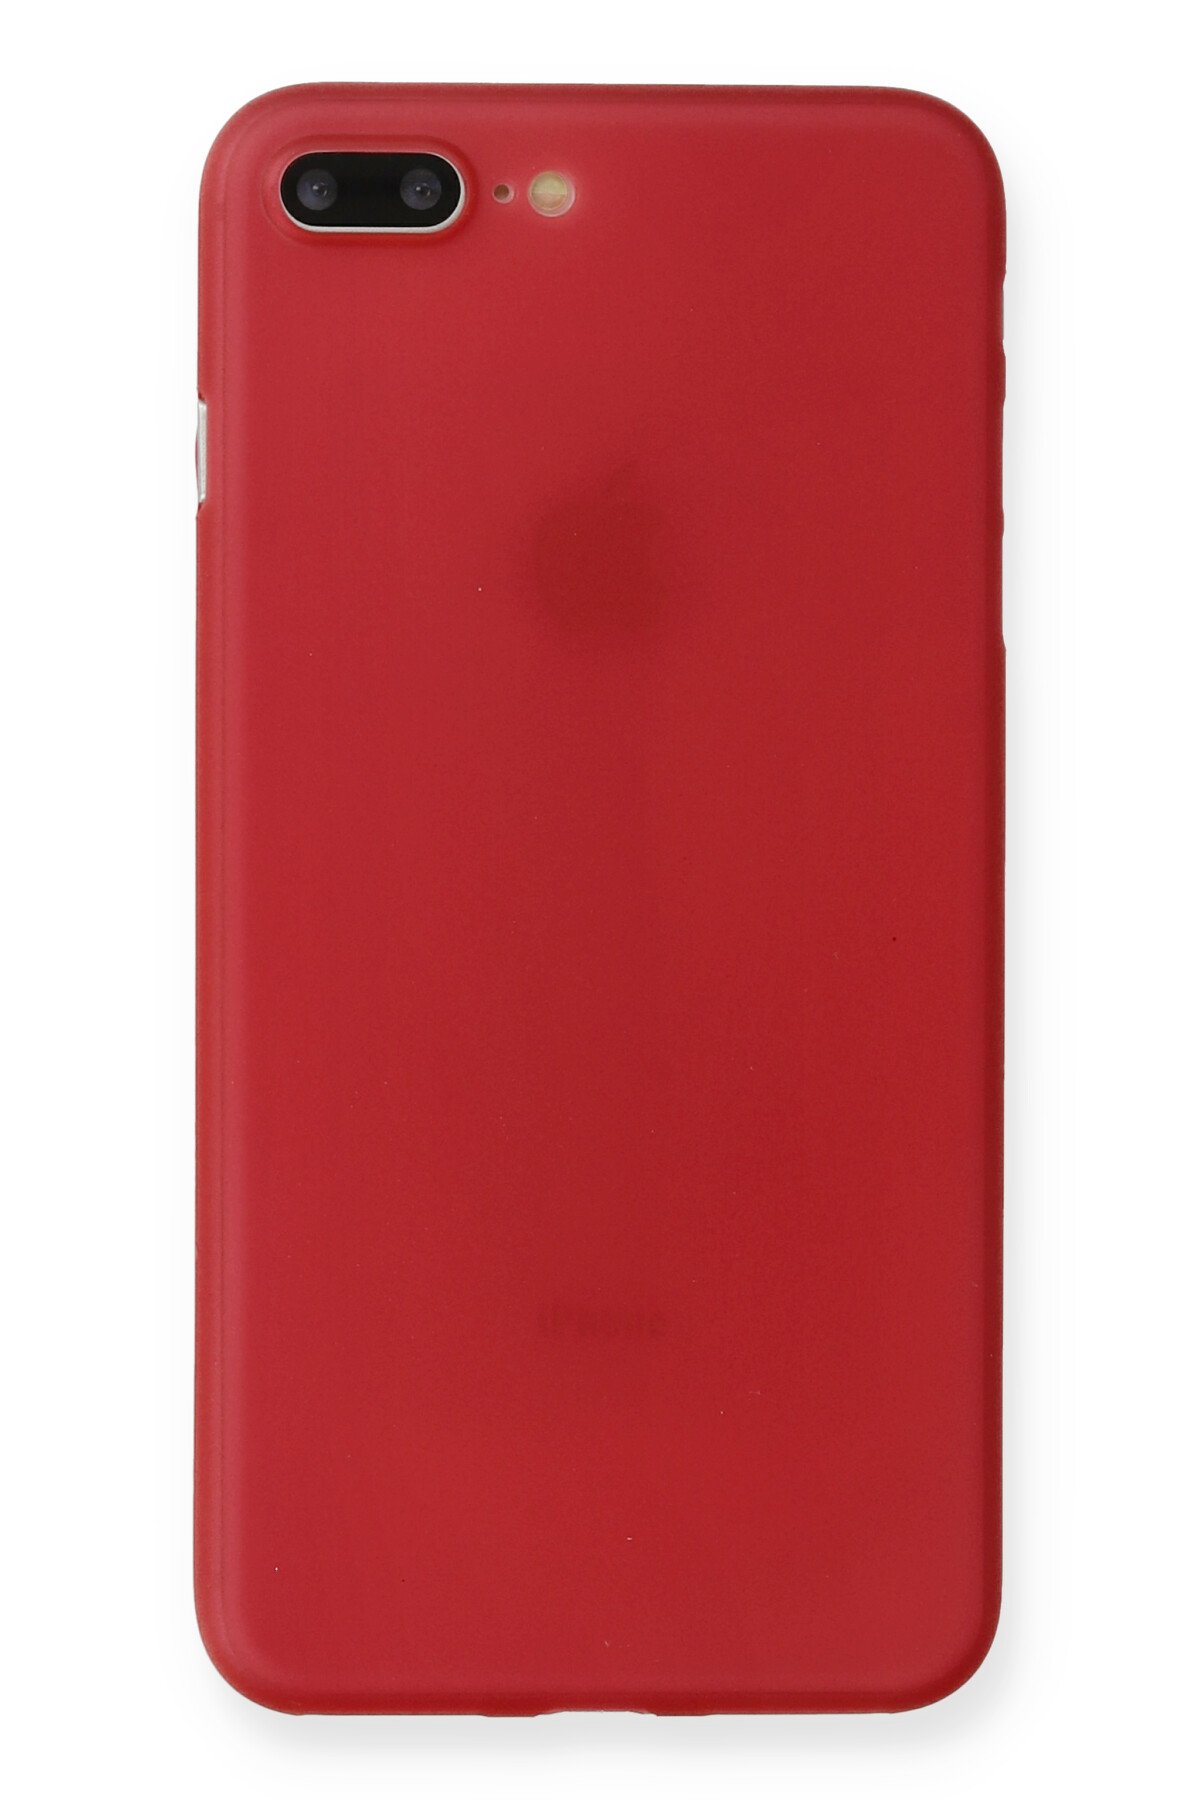 NewFace Newface iPhone 7 Plus Kılıf PP Ultra İnce Kapak - Kırmızı